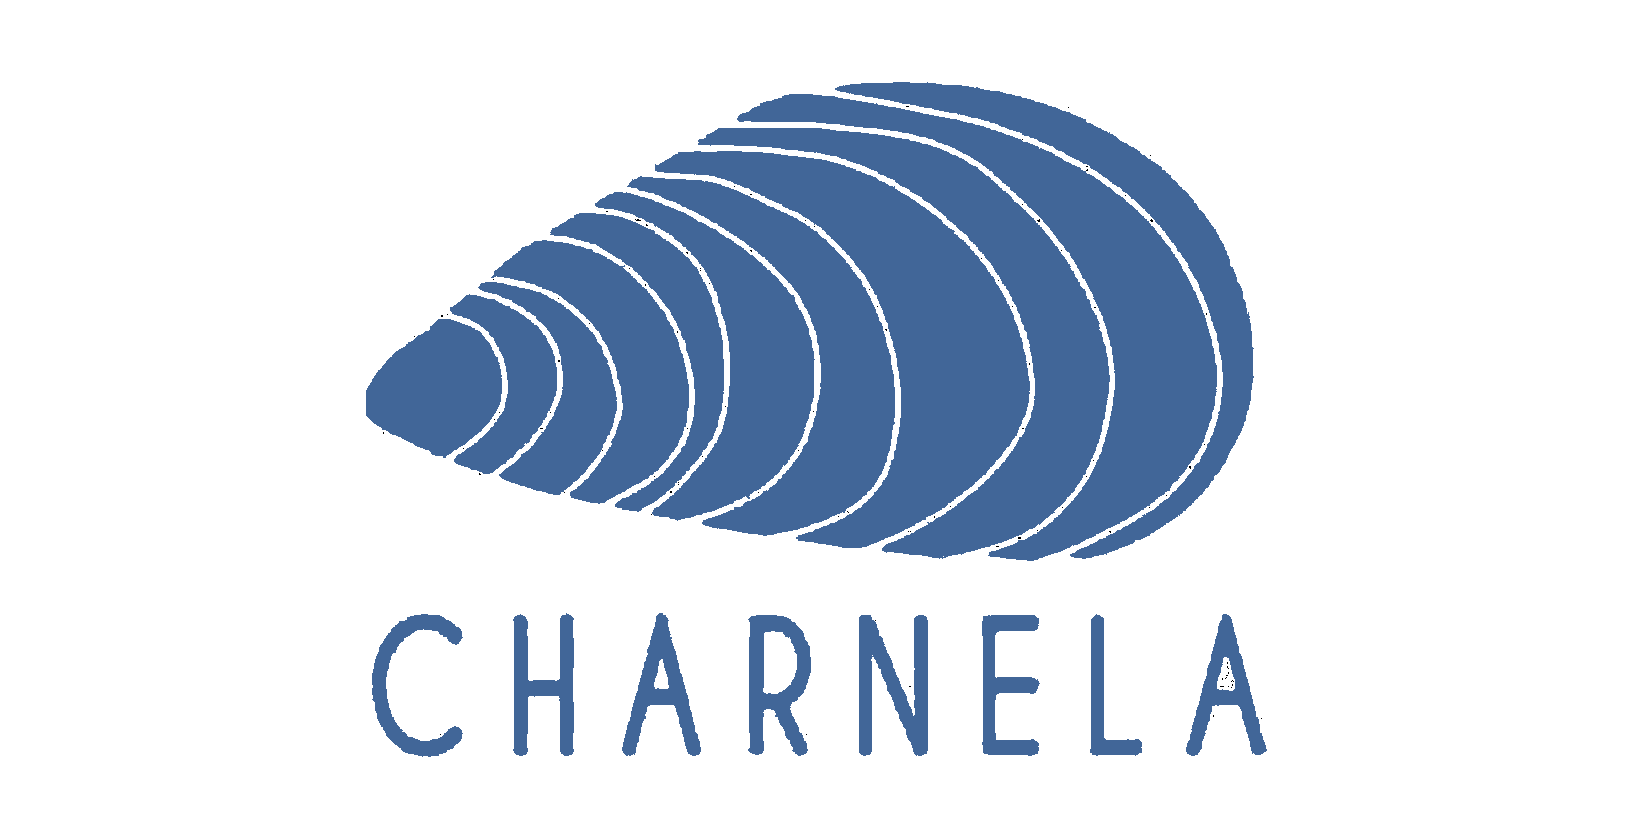 Charnela